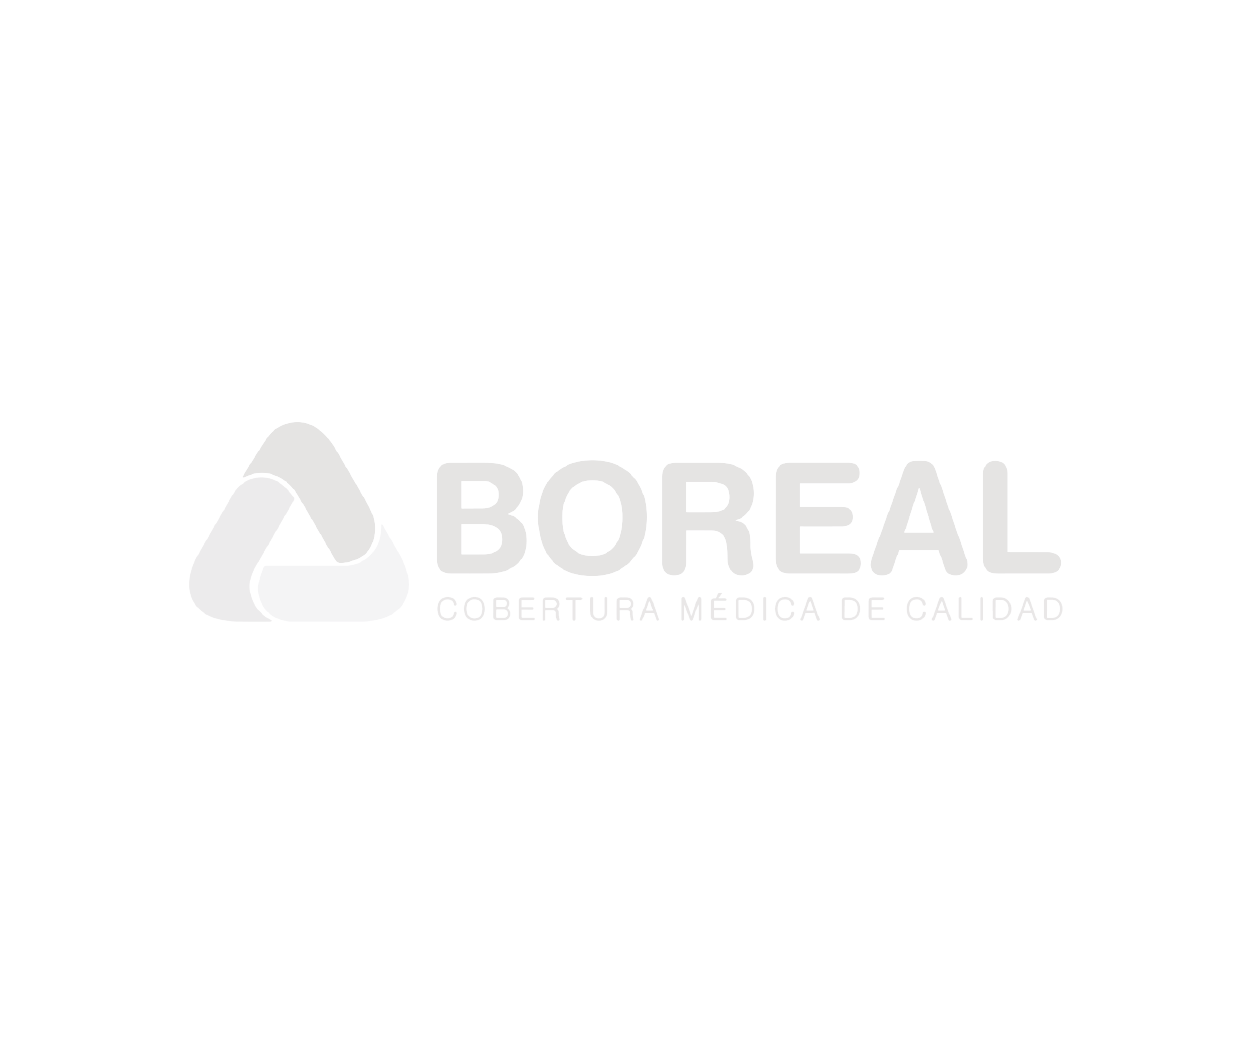 boreal